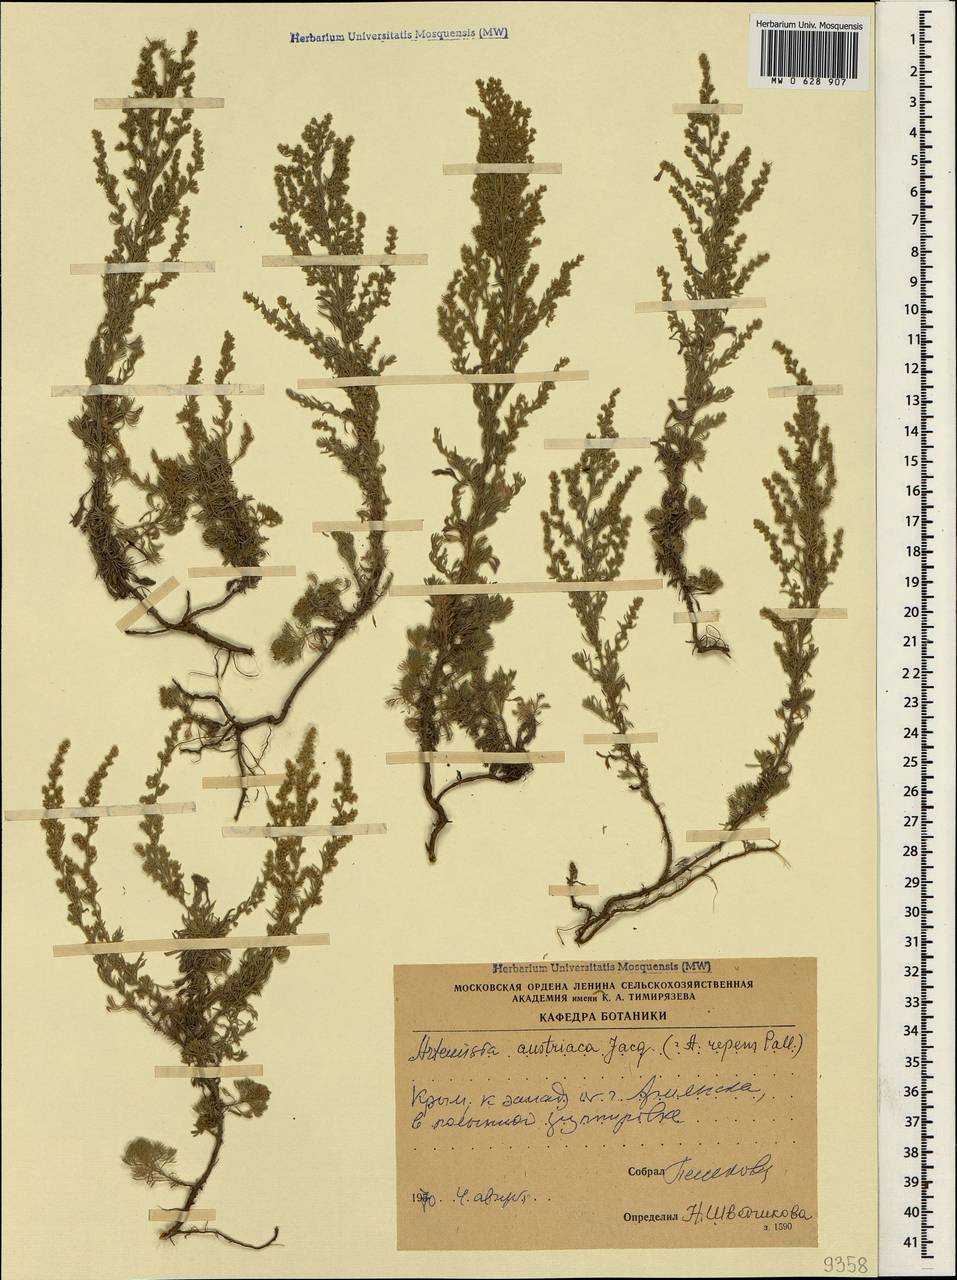 Artemisia austriaca Jacq., Crimea (KRYM) (Russia)